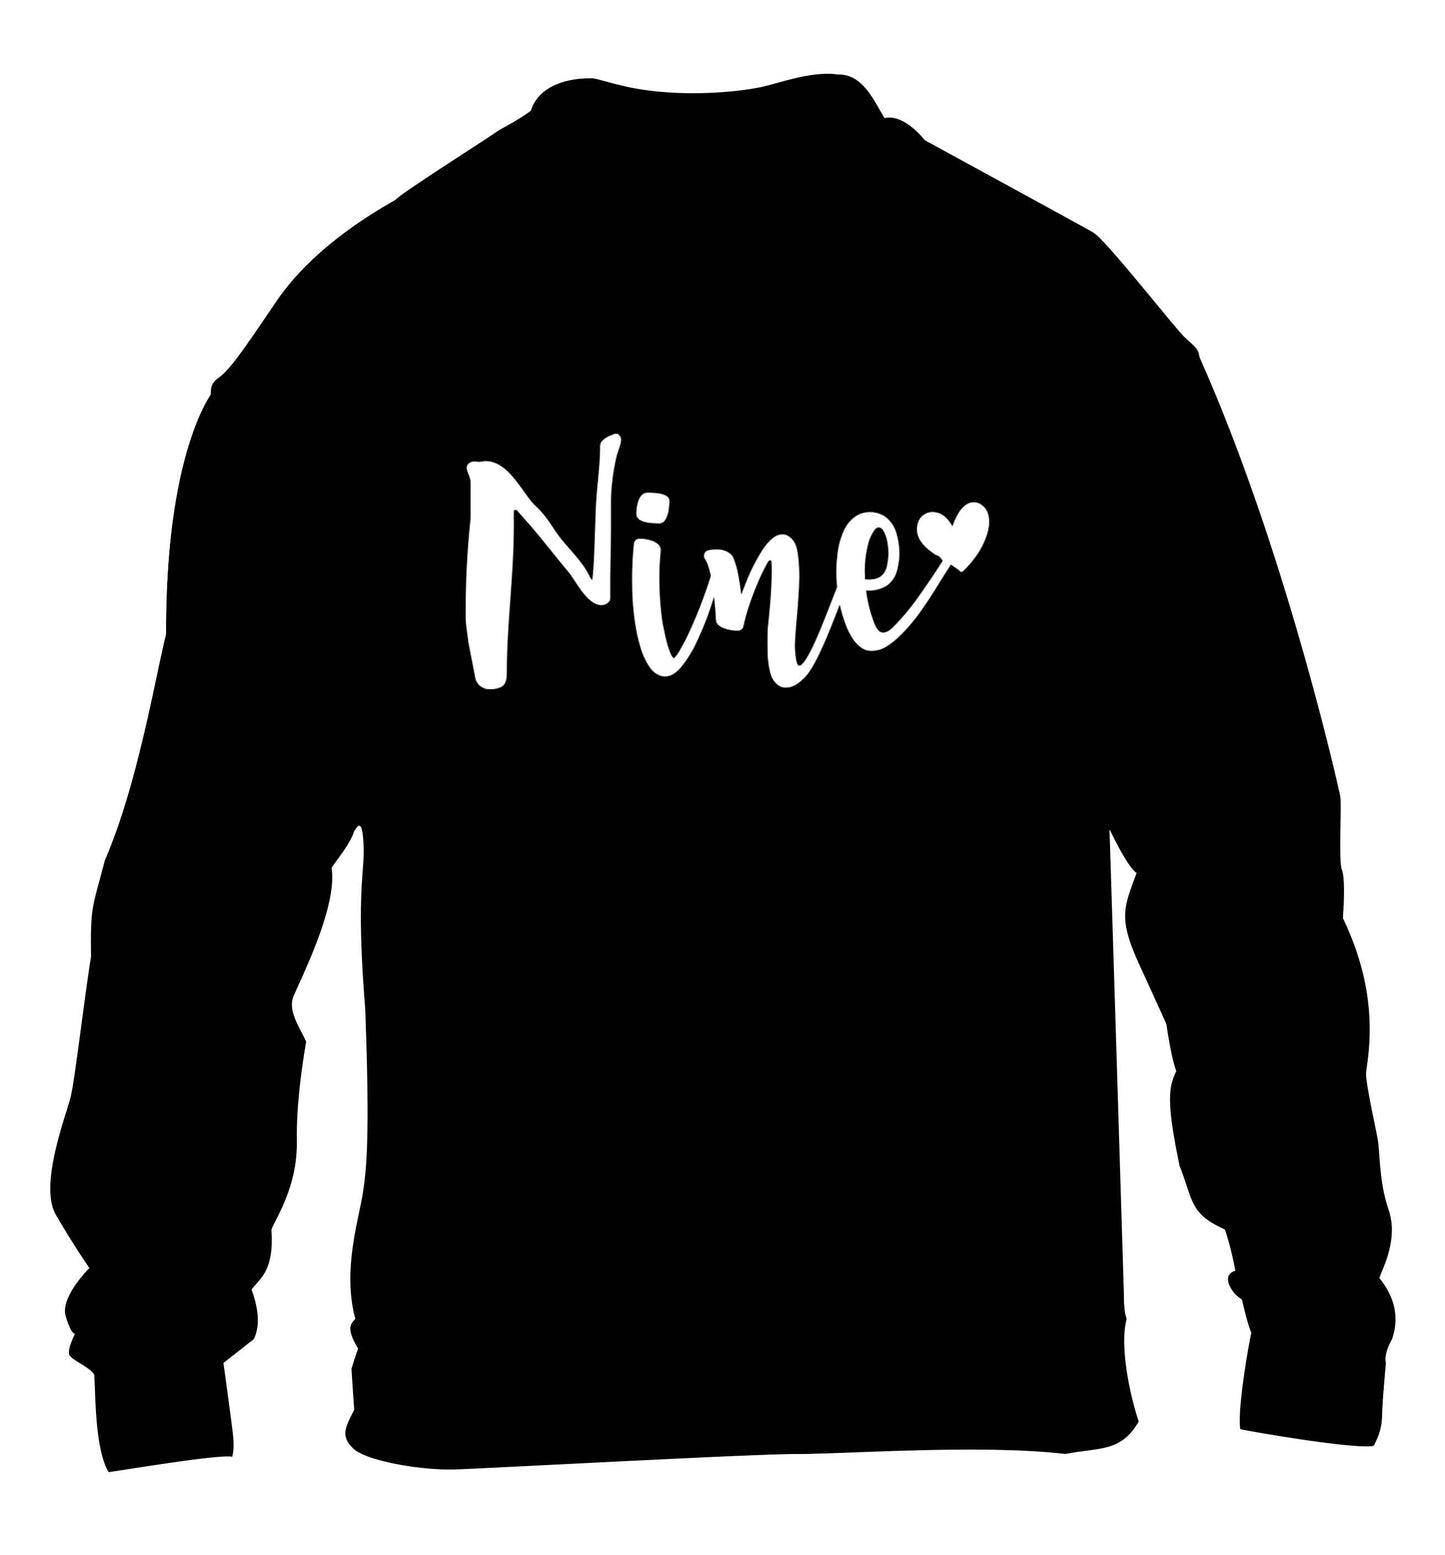 Nine and heart children's black sweater 12-13 Years